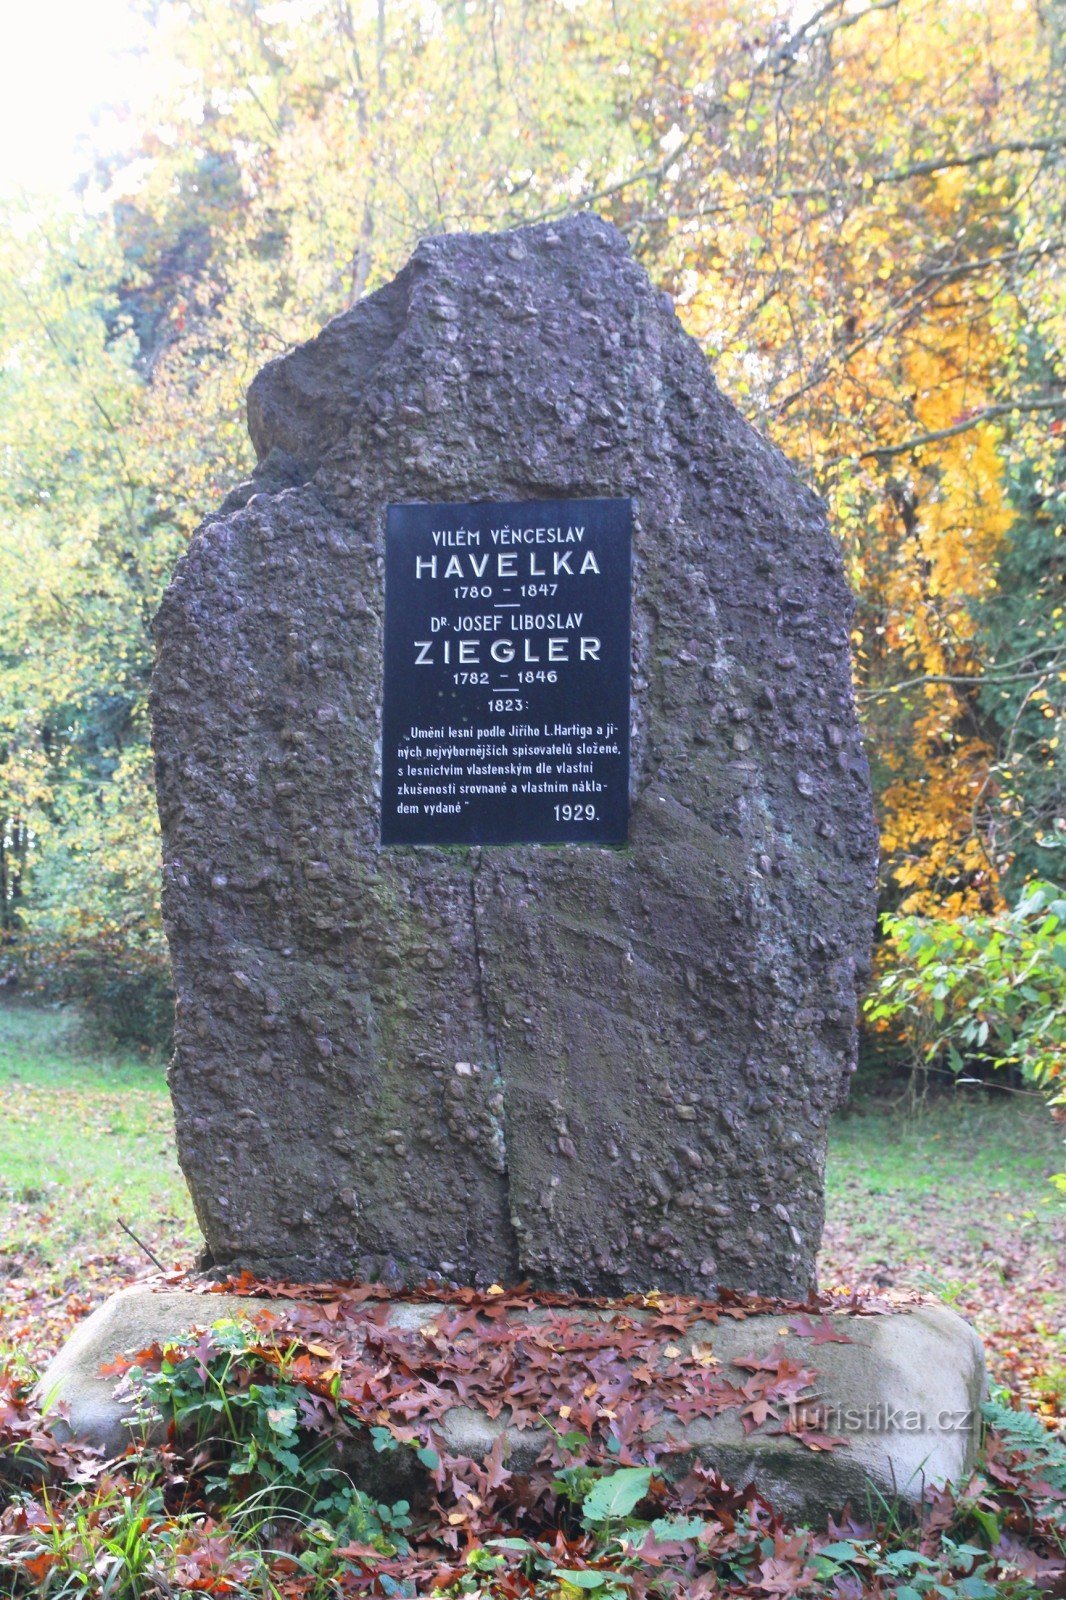 VV Havelka és JL Ziegler emlékműve